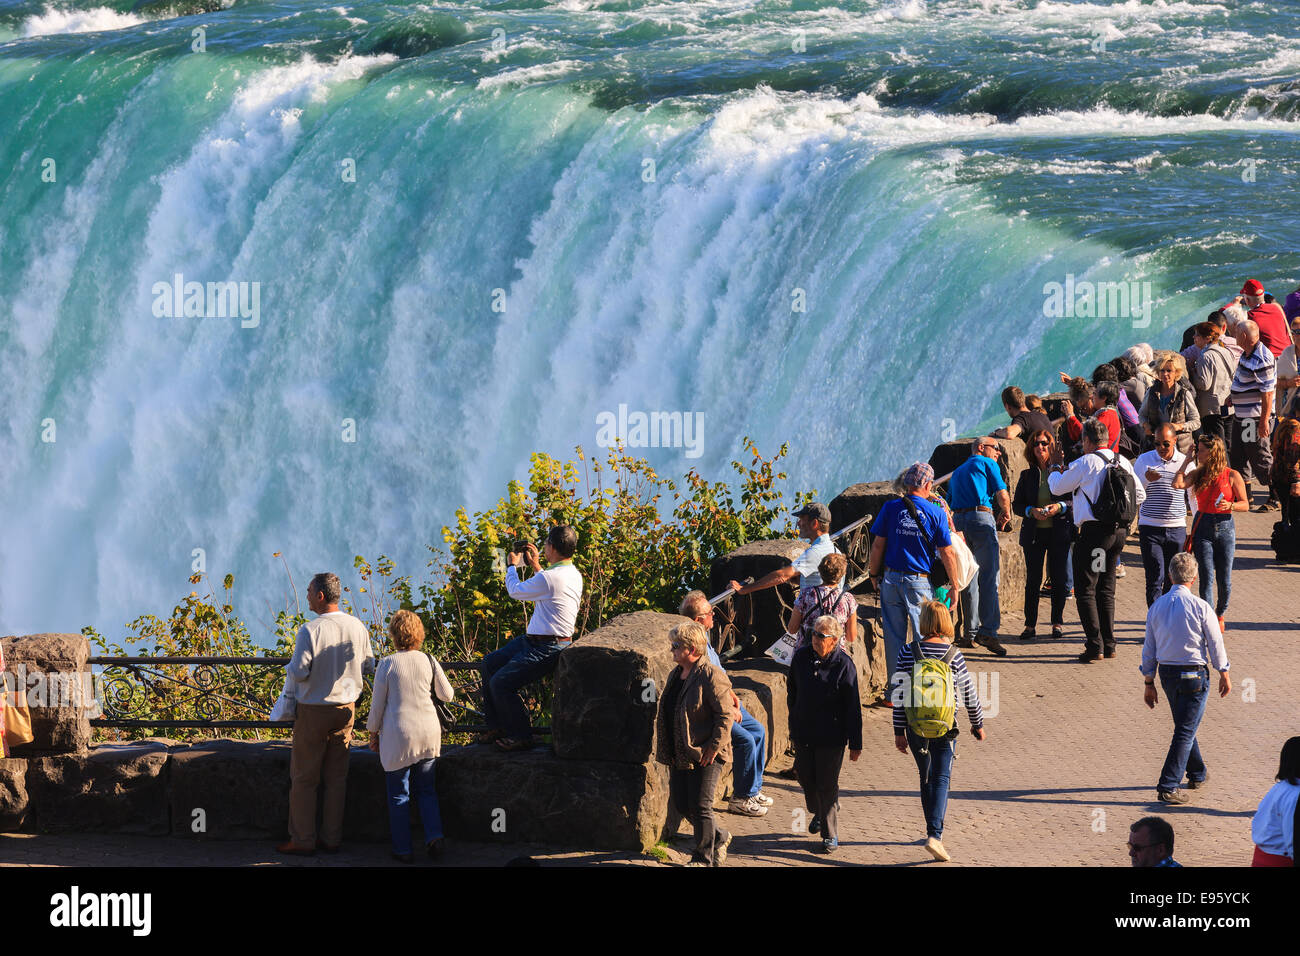 Donnant sur les touristes et profiter de la vue à des chutes canadiennes, partie de la région de Niagara Falls, Ontario, Canada. Banque D'Images